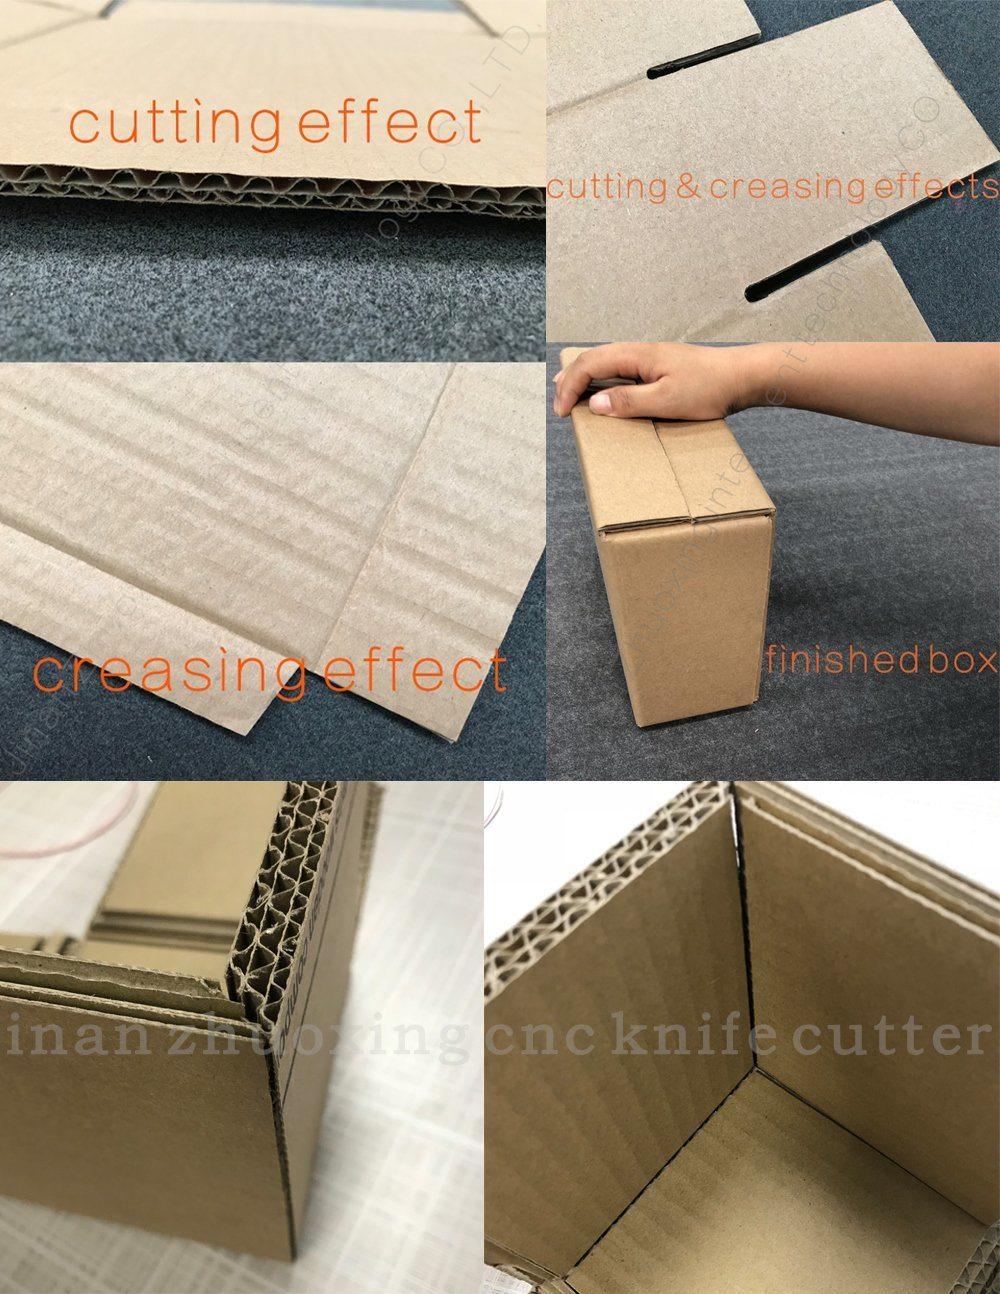 Zhuoxing Digital CNC Paper Cardboard Box Carton Knife Cutter Machine